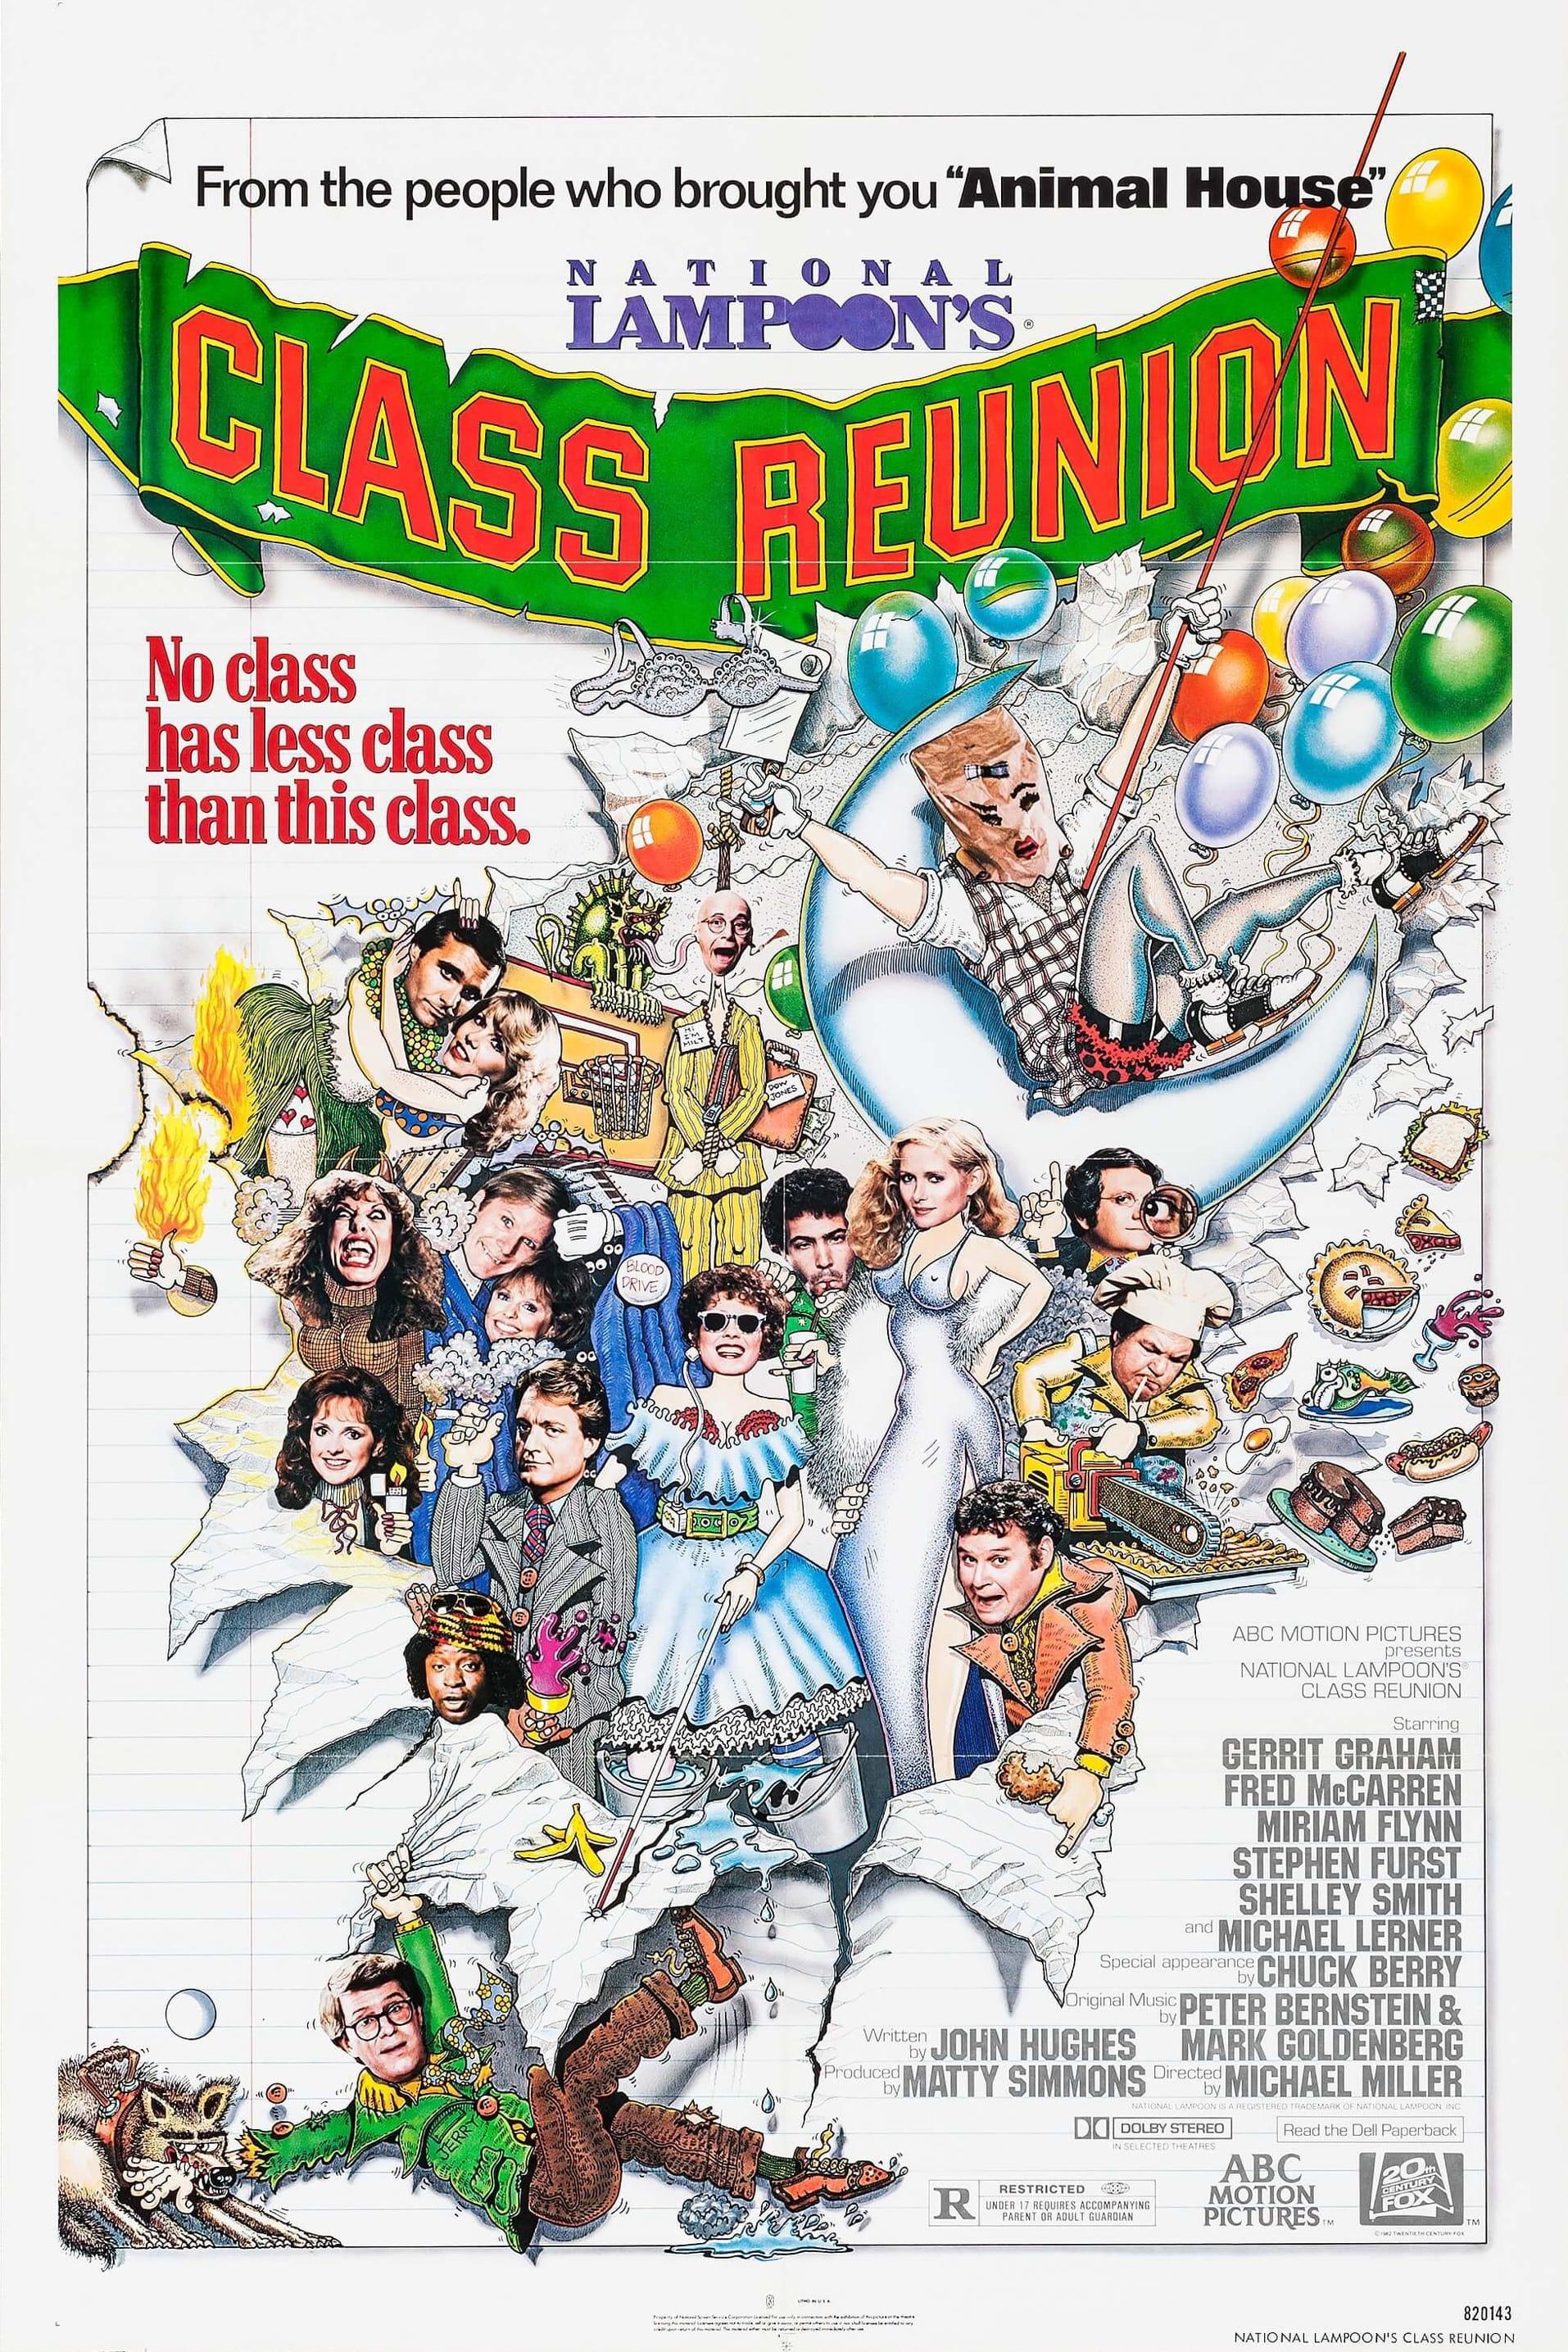 Class Reunion poster